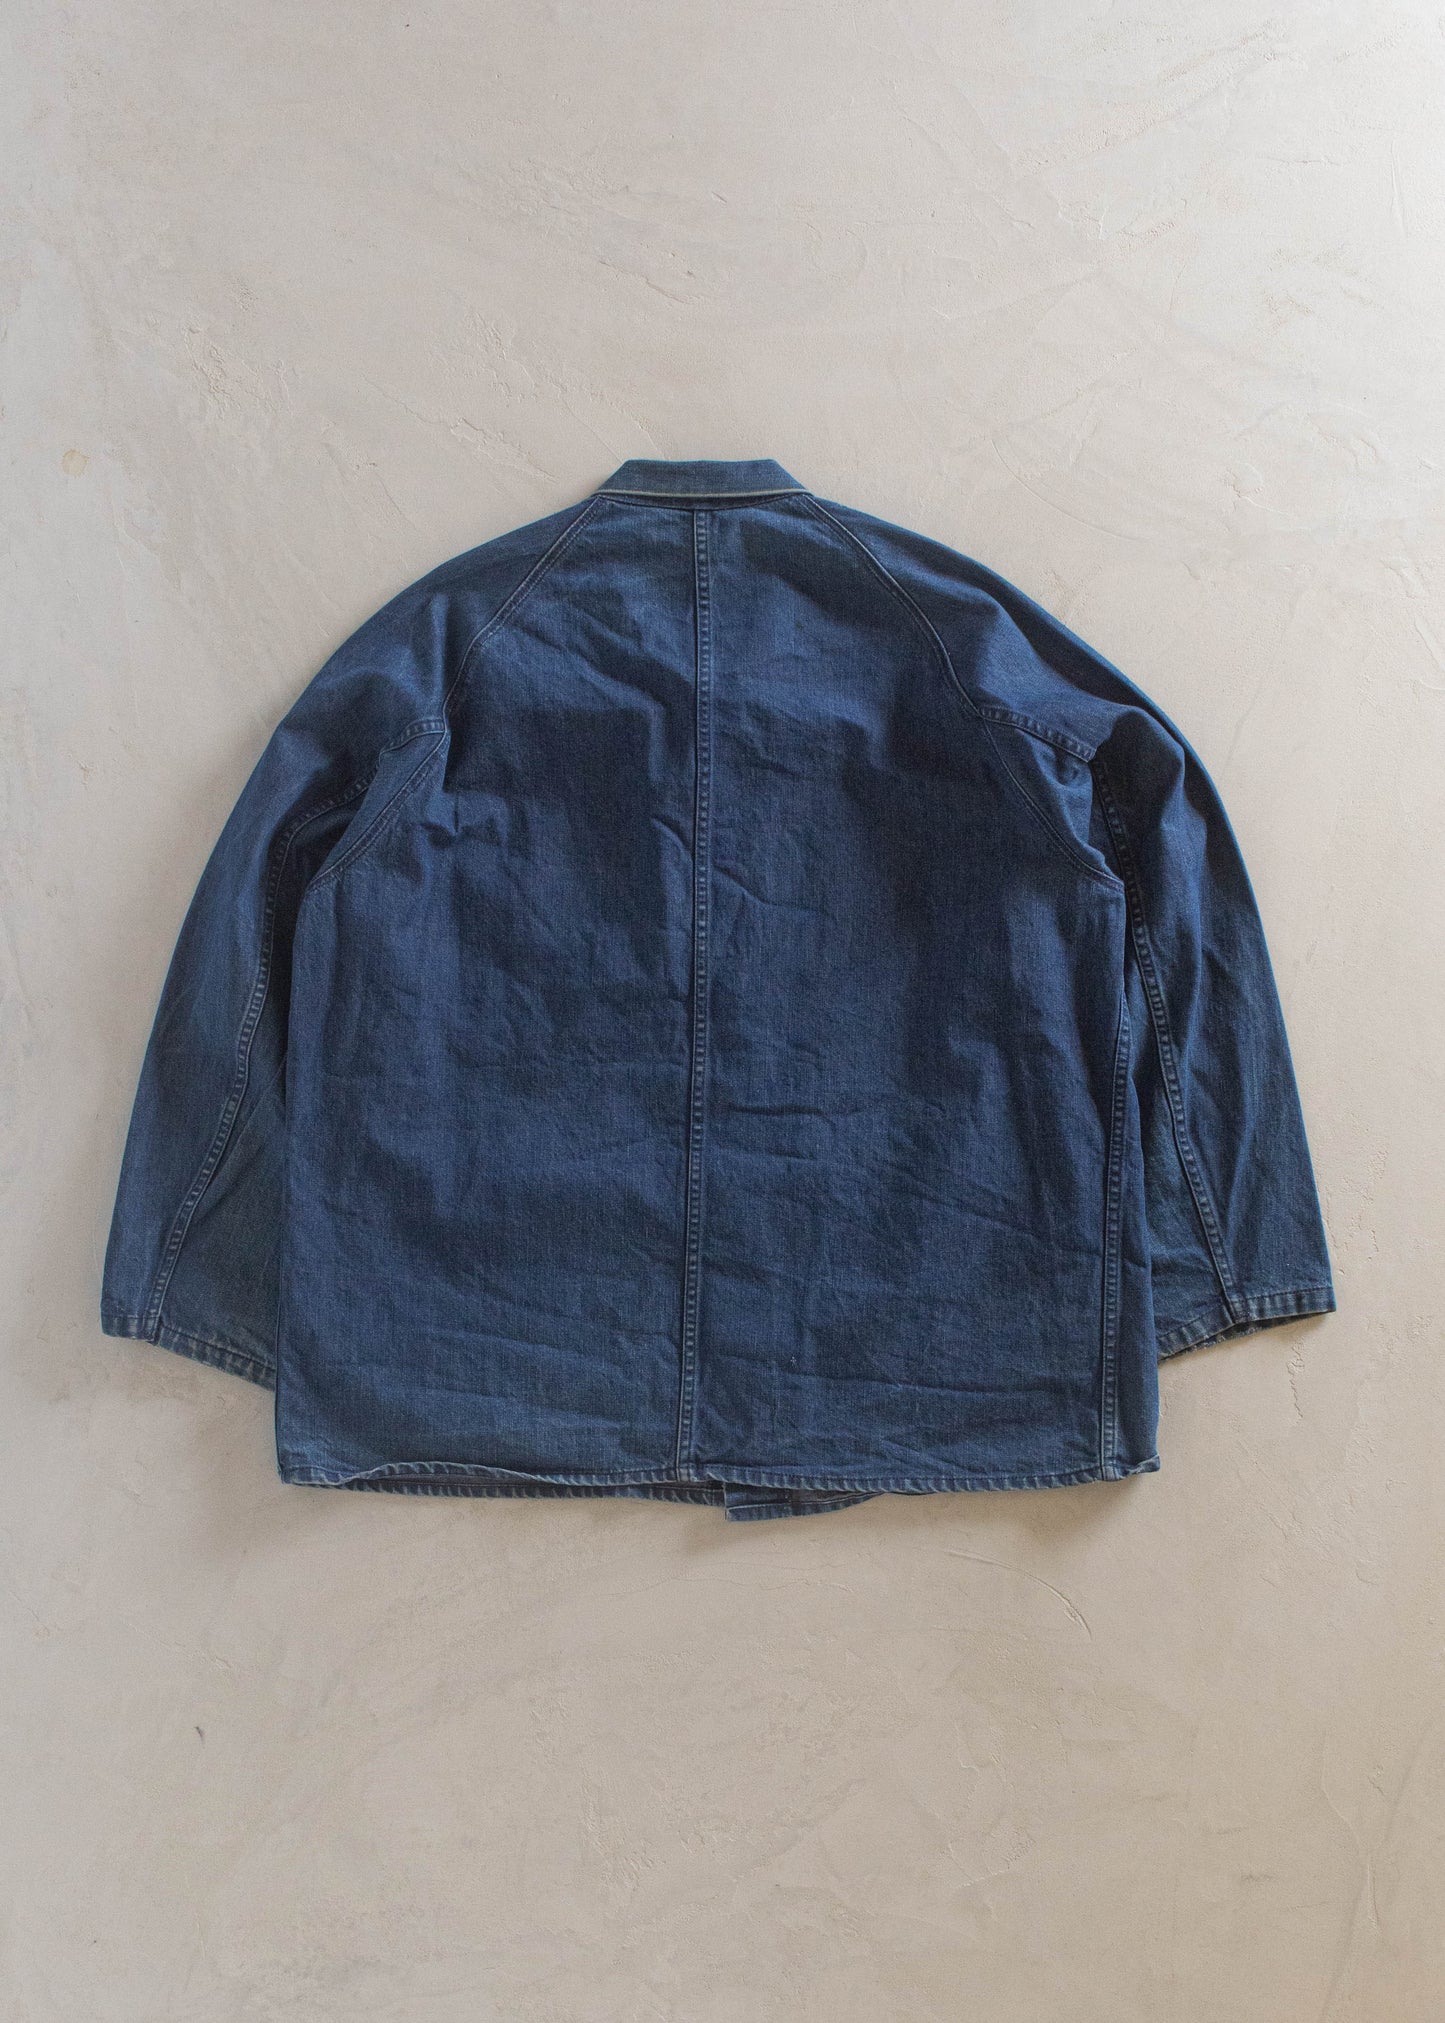 1980s Denim Chore Coat Size XL/2XL